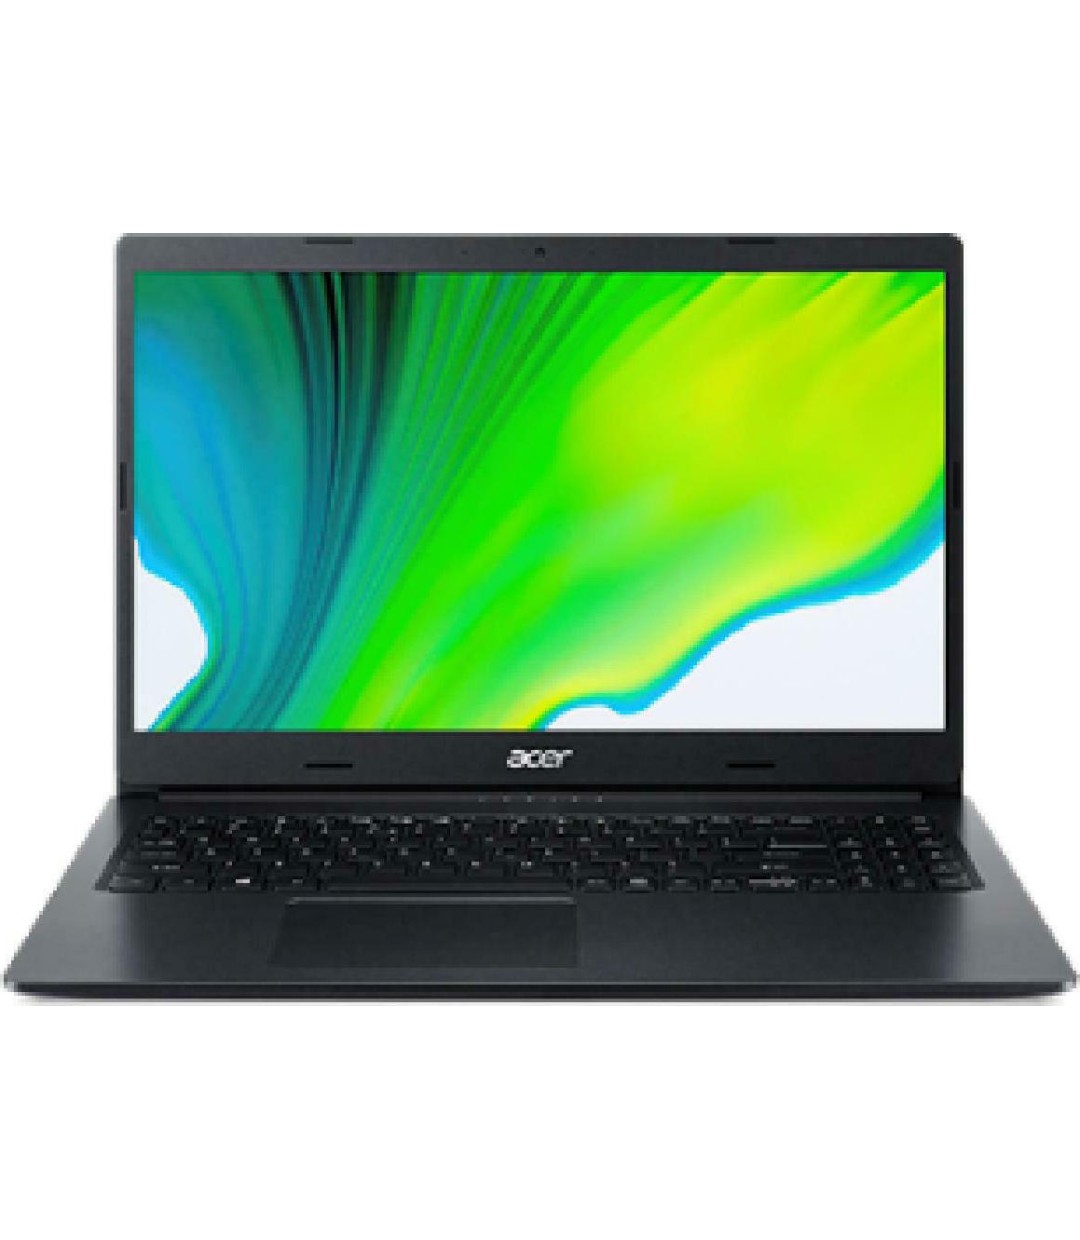 Acer Aspire 3 A315-23 15.6" (Ryzen 5-3500U/8GB/256GB SSD/FHD/W10 Home) (GR Keyboard)